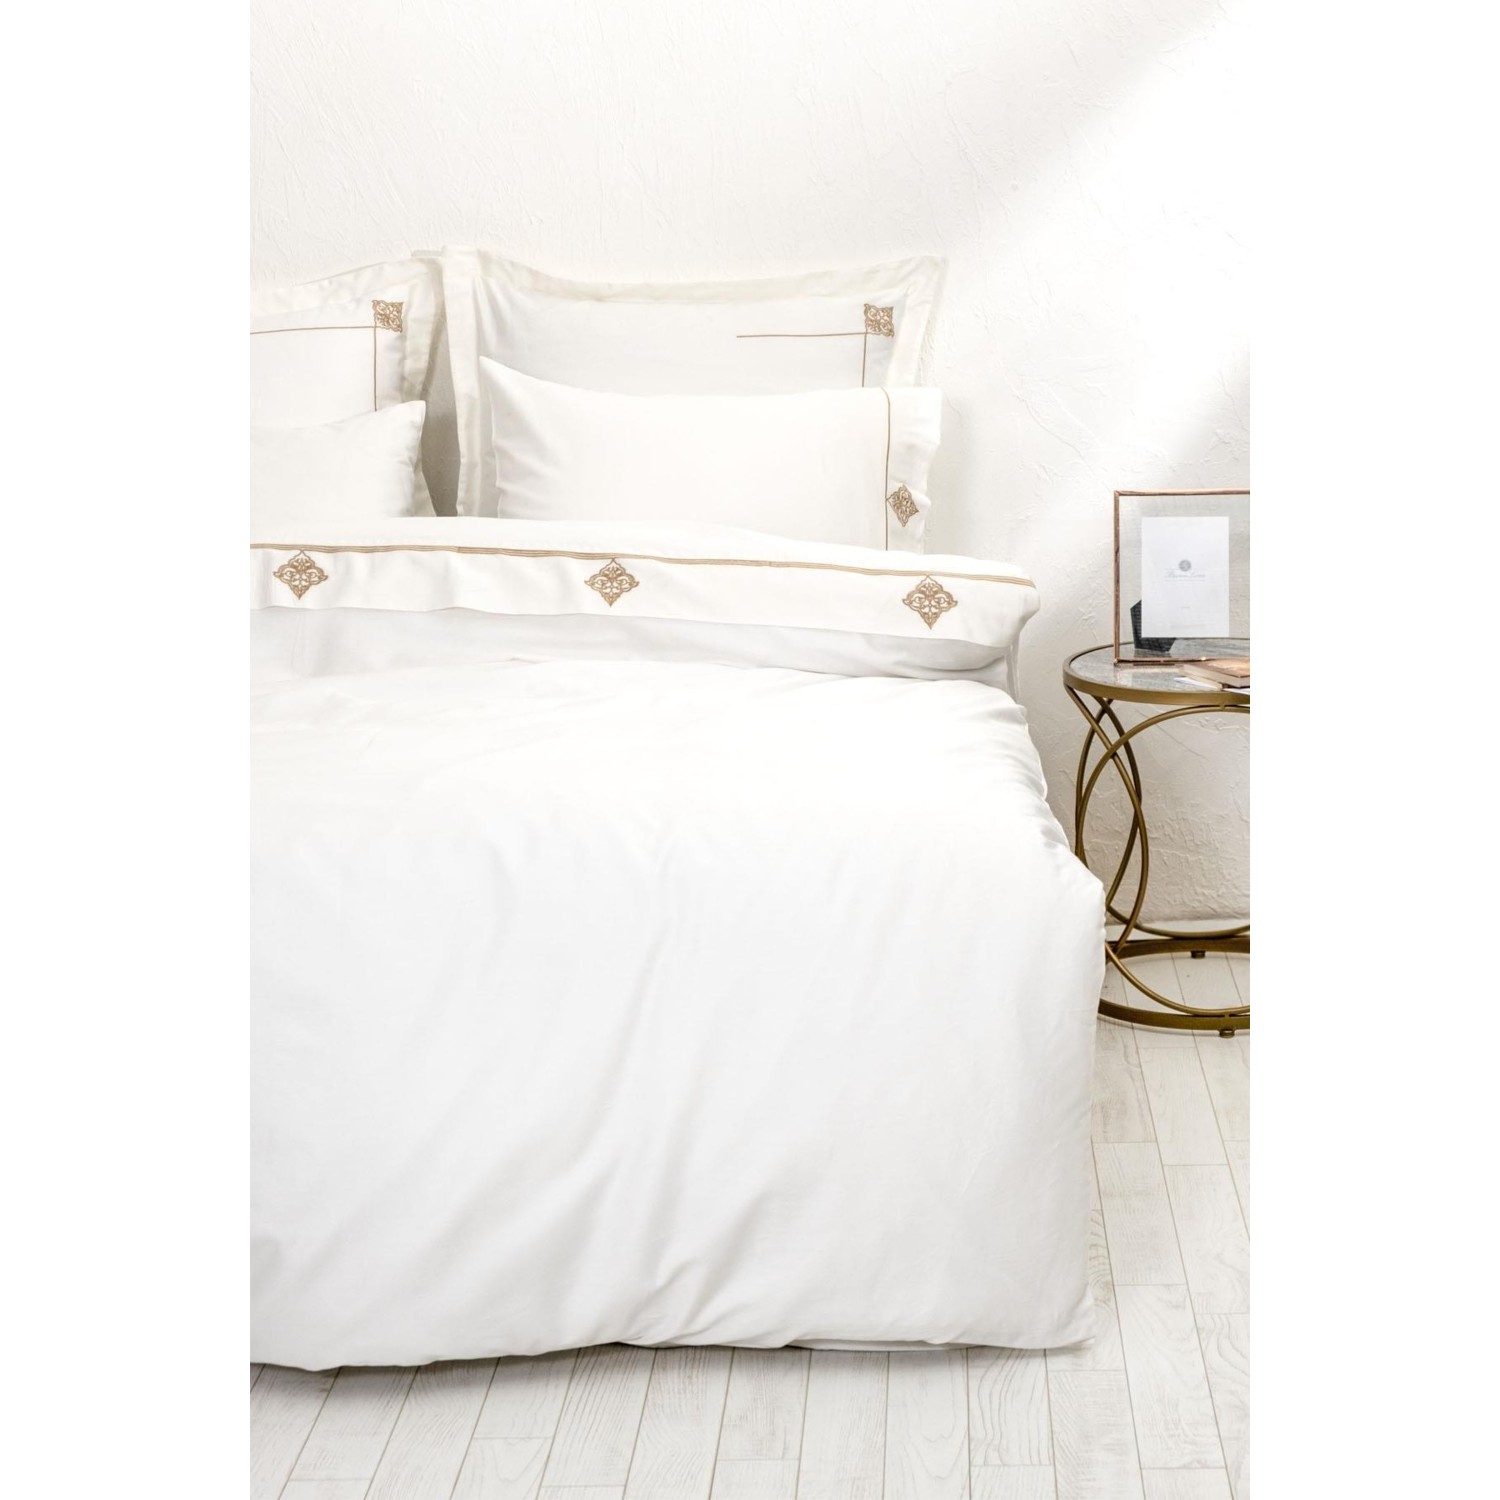 цена Экокотон Aden Комплект постельного белья королевского размера 100% органический хлопок, атлас кремового цвета с вышивкой 240X220 см